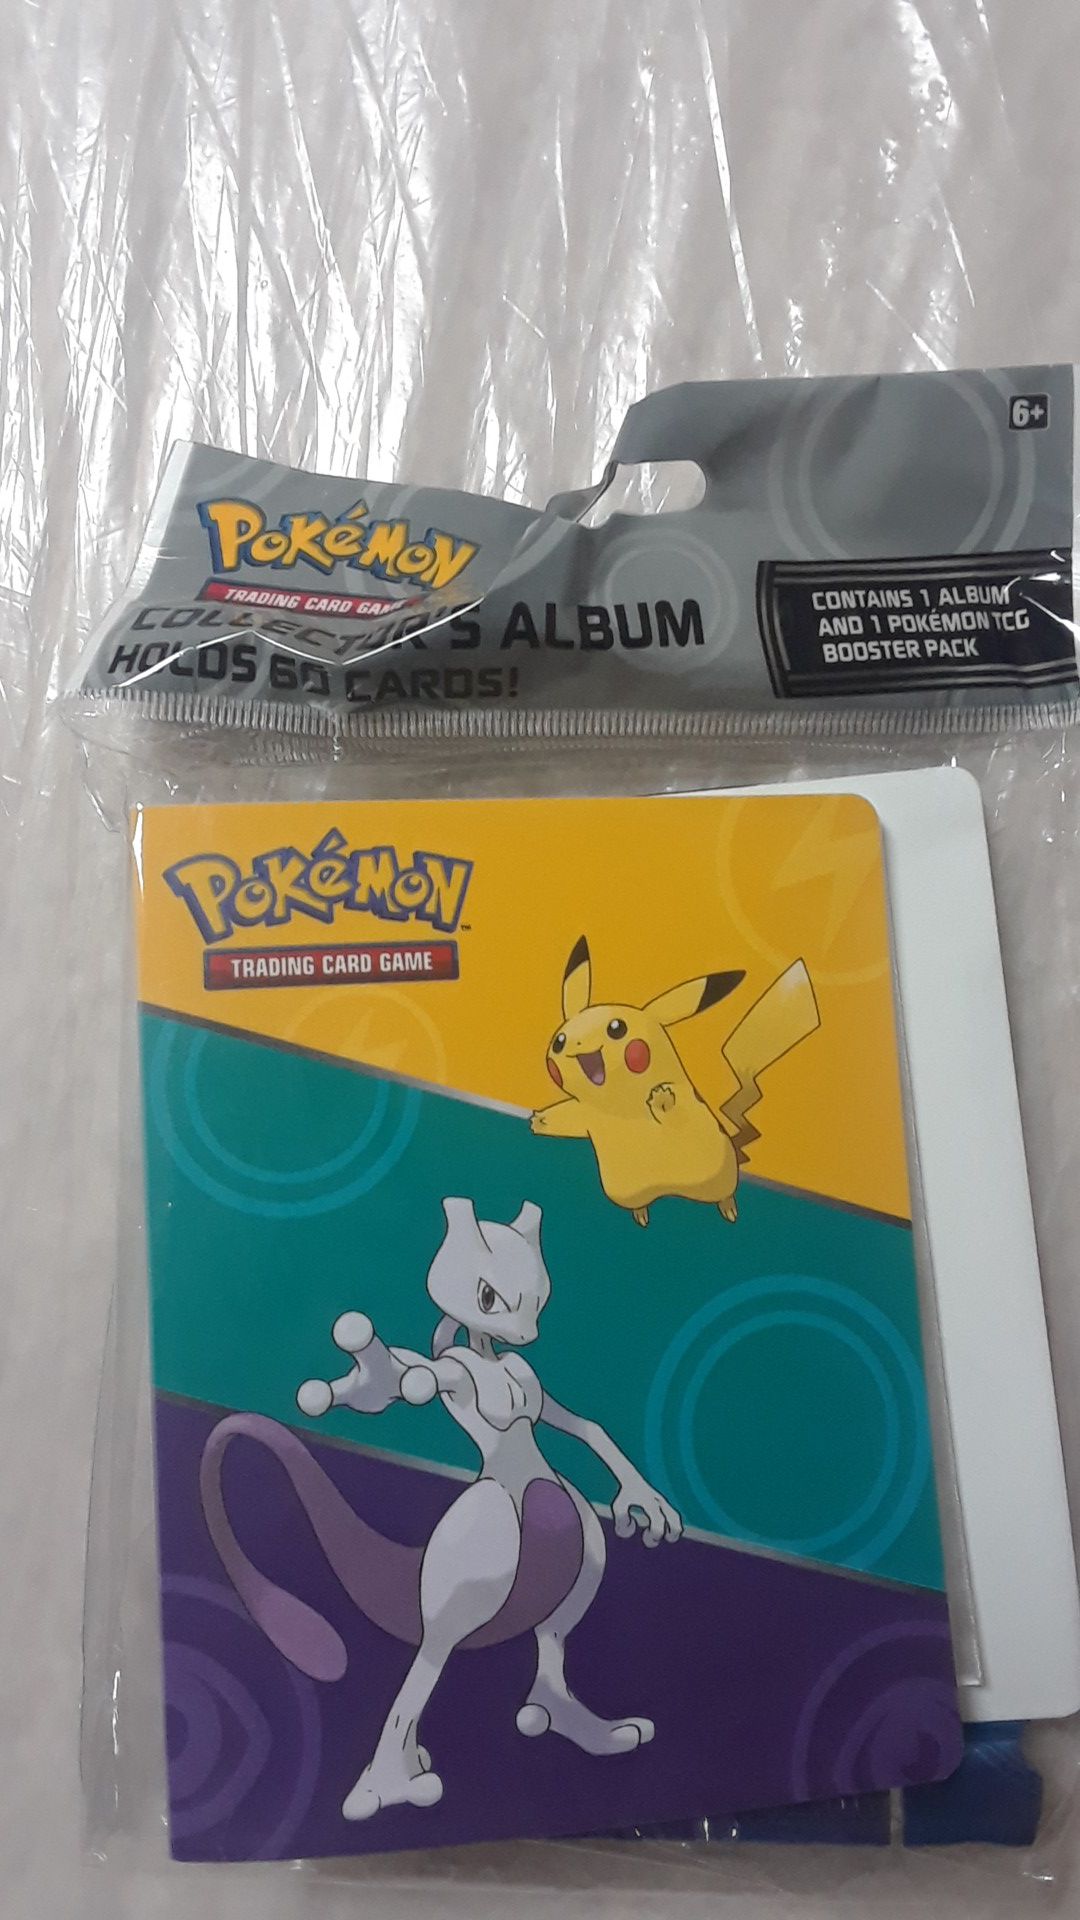 Pokemon cards with album